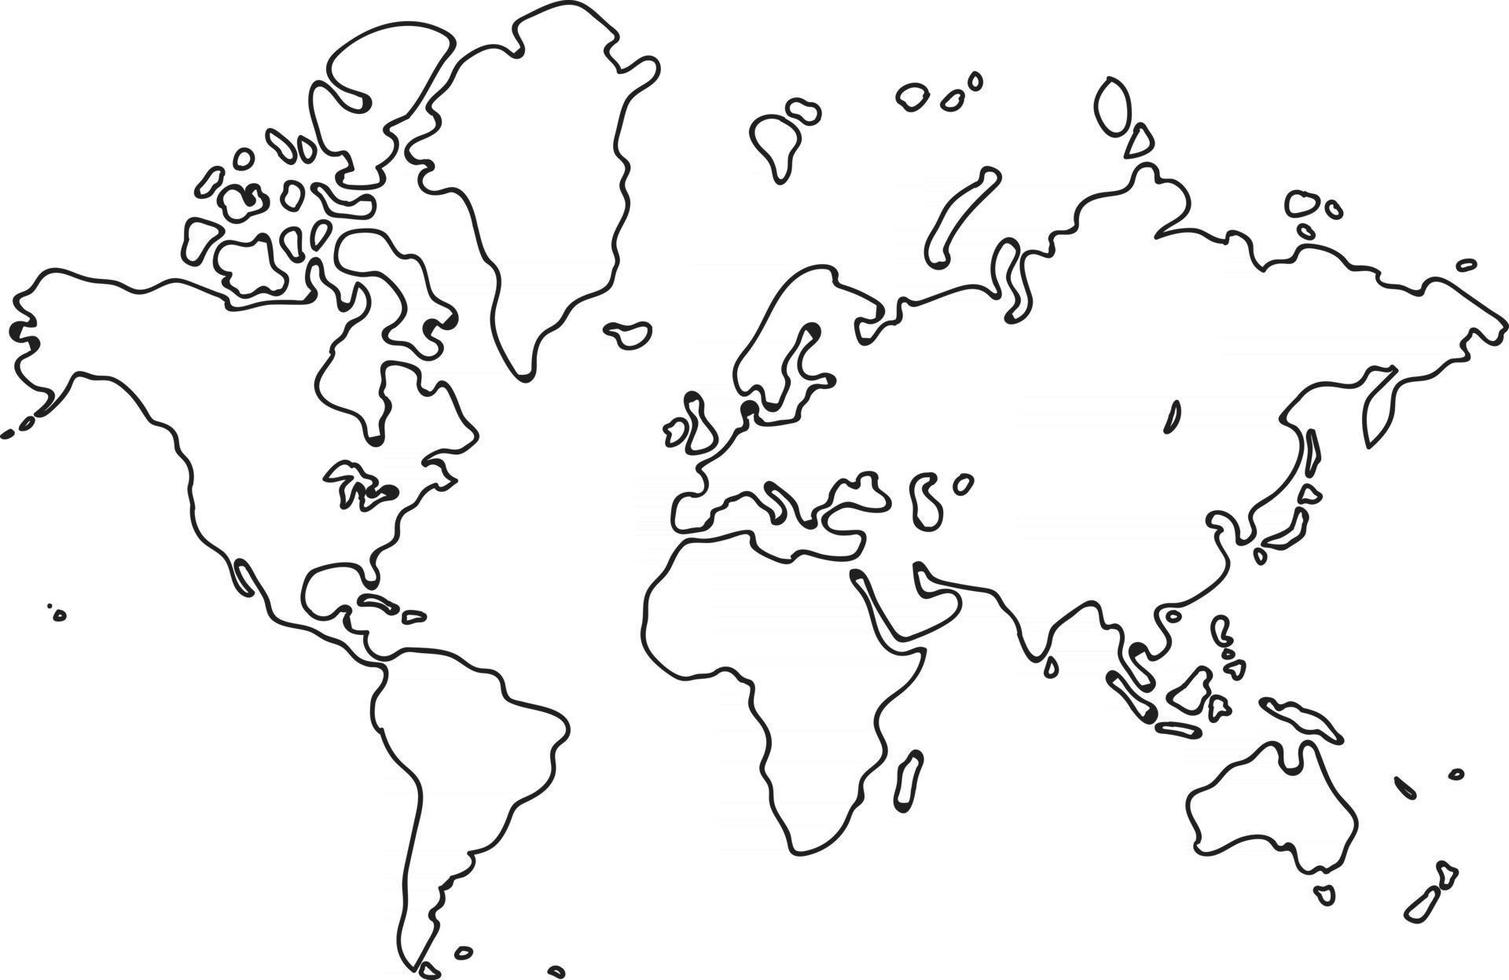 schizzo della mappa del mondo a mano libera su sfondo bianco vettore